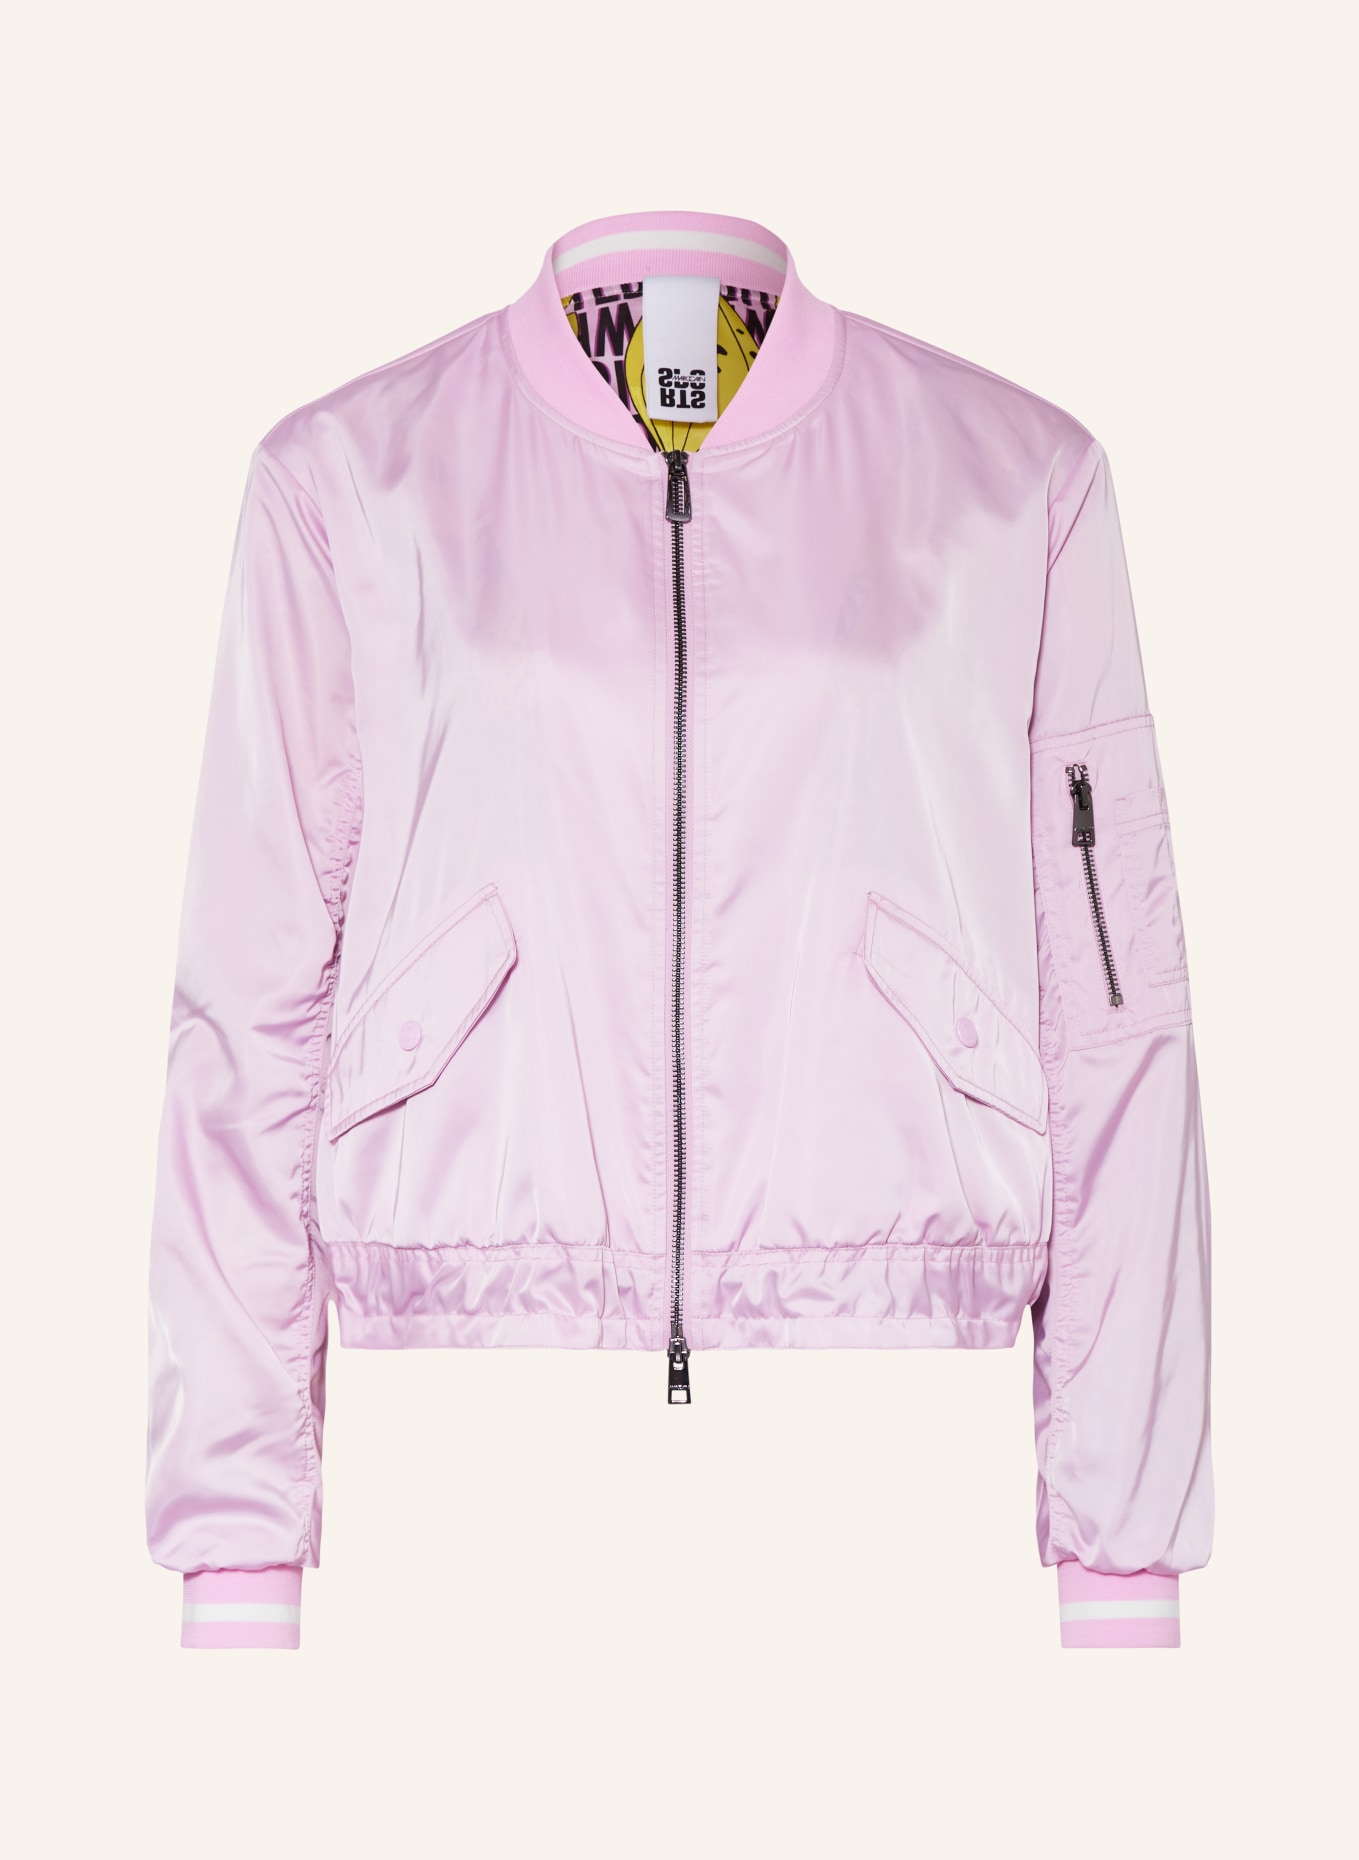 MARC CAIN Bluzon, Kolor: 708 bright pink lavender (Obrazek 1)